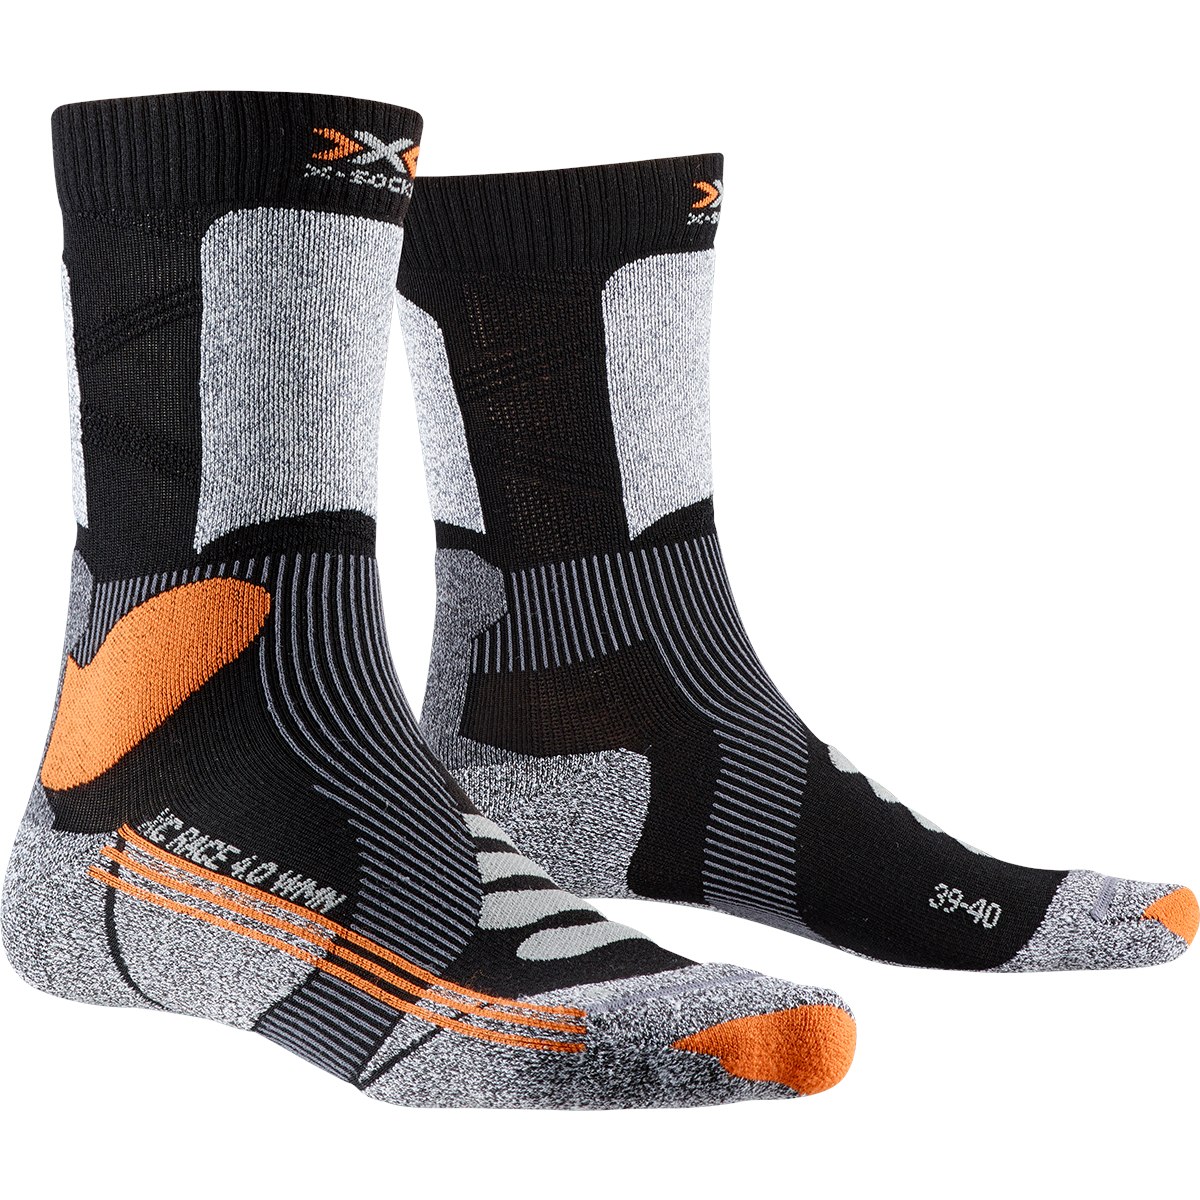 Produktbild von X-Socks X-Country Race 4.0 Socken für Damen - black/stone grey melange